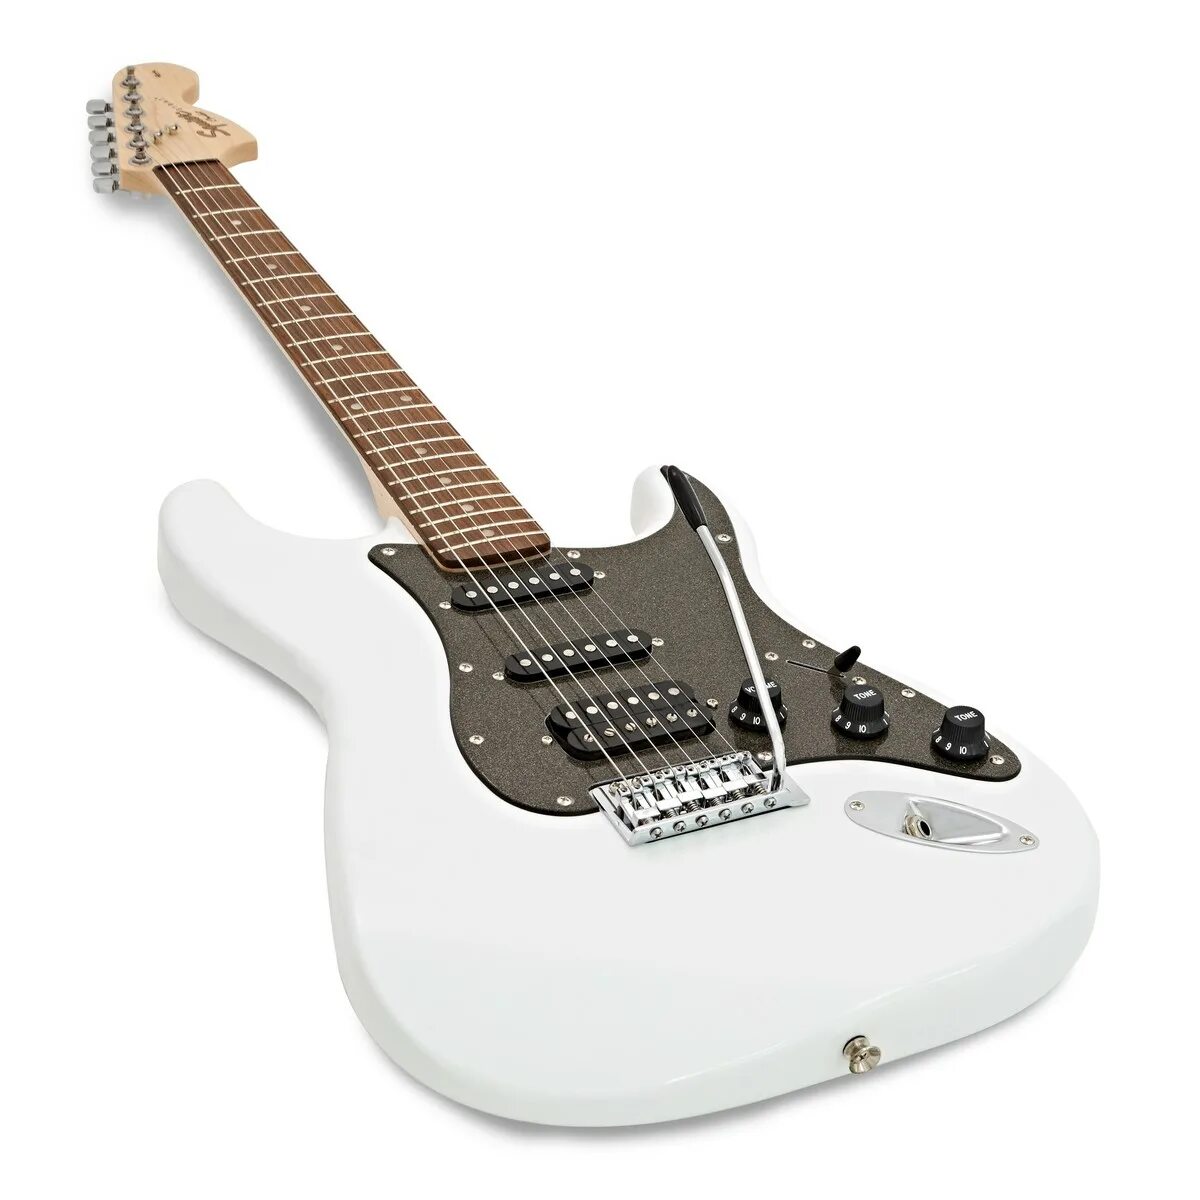 Affinity stratocaster. Fender Stratocaster Affinity Olympic White. Affinity Stratocaster 2021. Squier Affinity Stratocaster White. Squier Affinity Strat White.